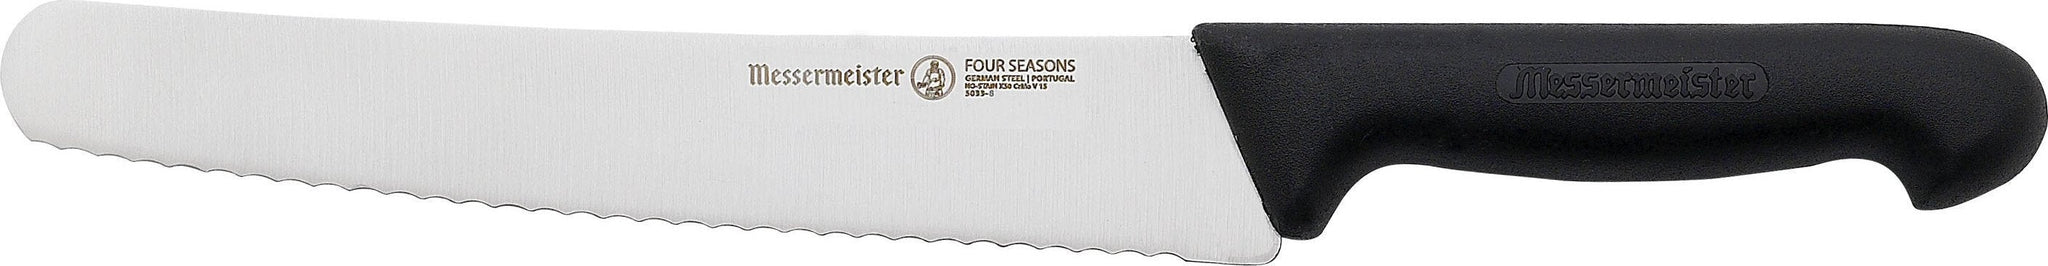 Messermeister - Four Seasons 8" Scalloped Baker's Bread Knife - 5033-8